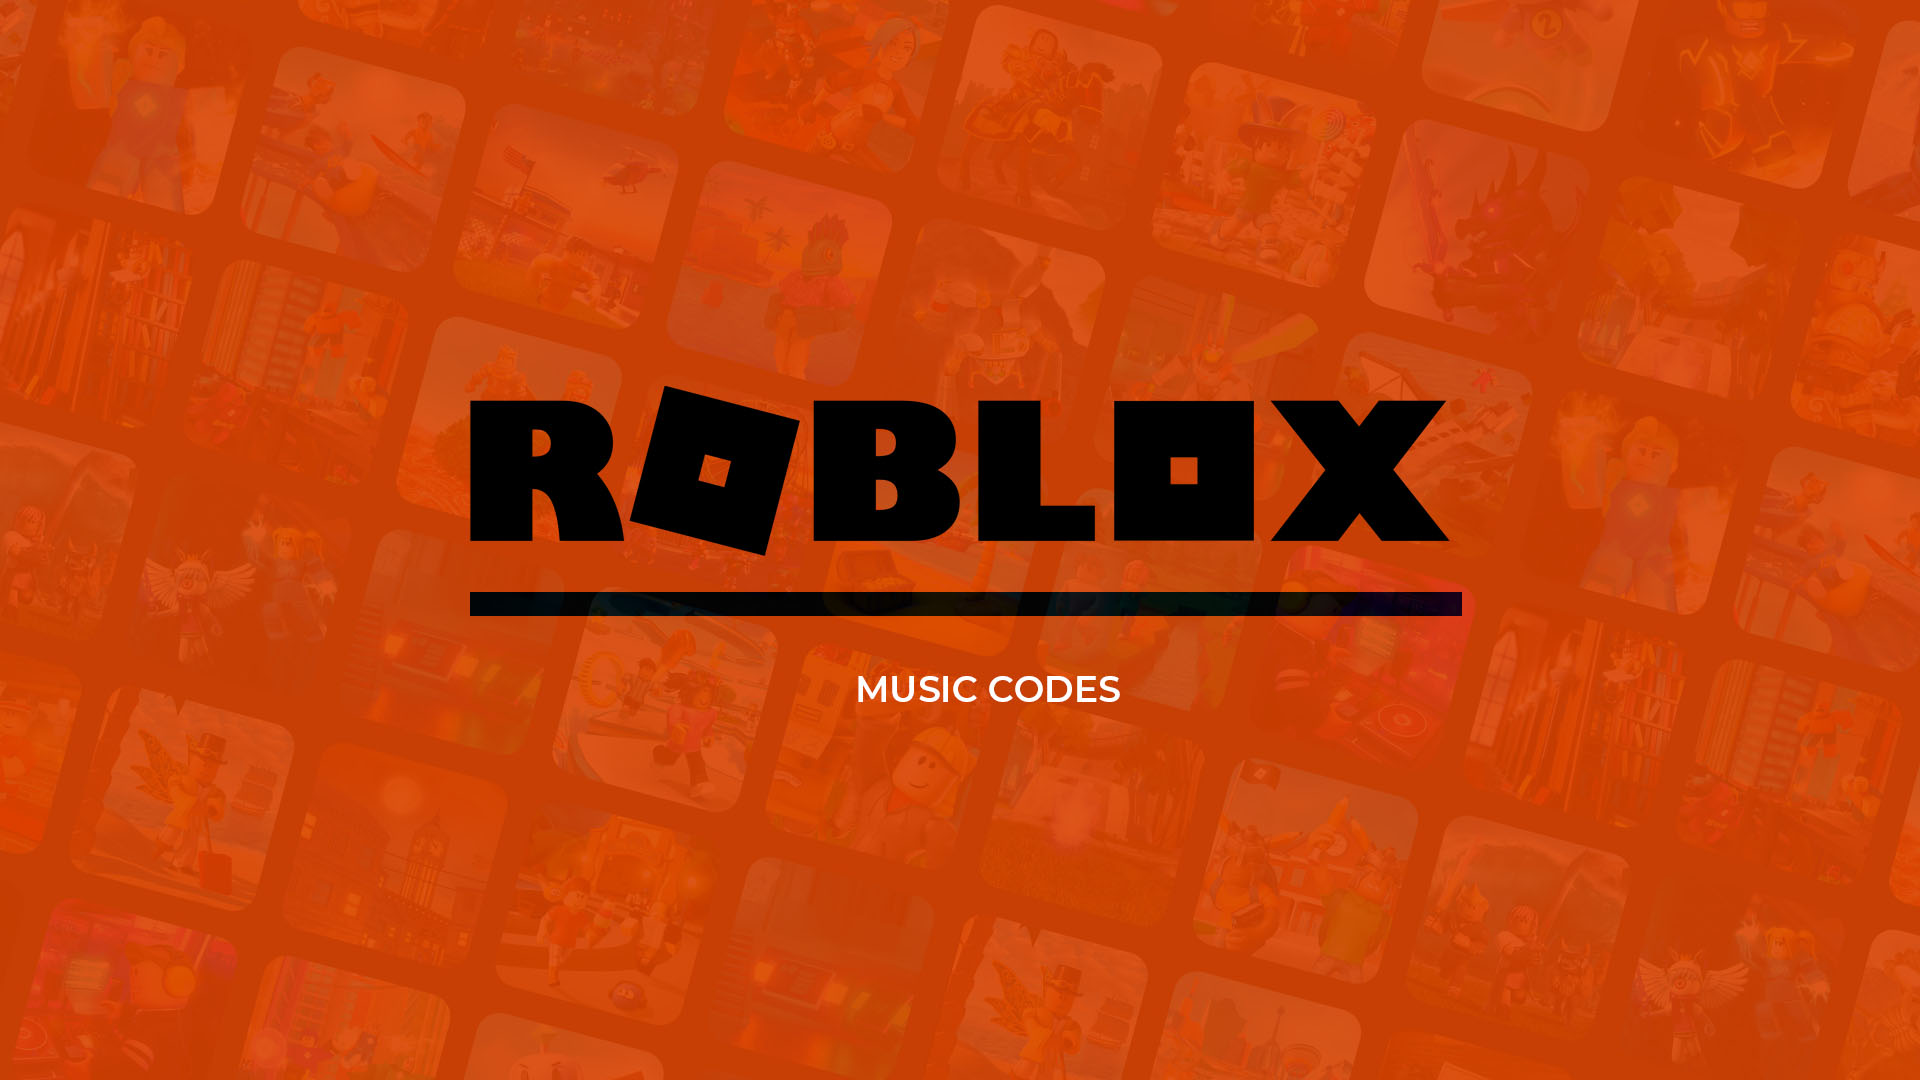 Mafia Roblox IDs 2023 Roblox Music IDs>100 Popular Mafia Roblox IDs 2023  Roblox Music IDs - bug mafia logo (1597SP8)